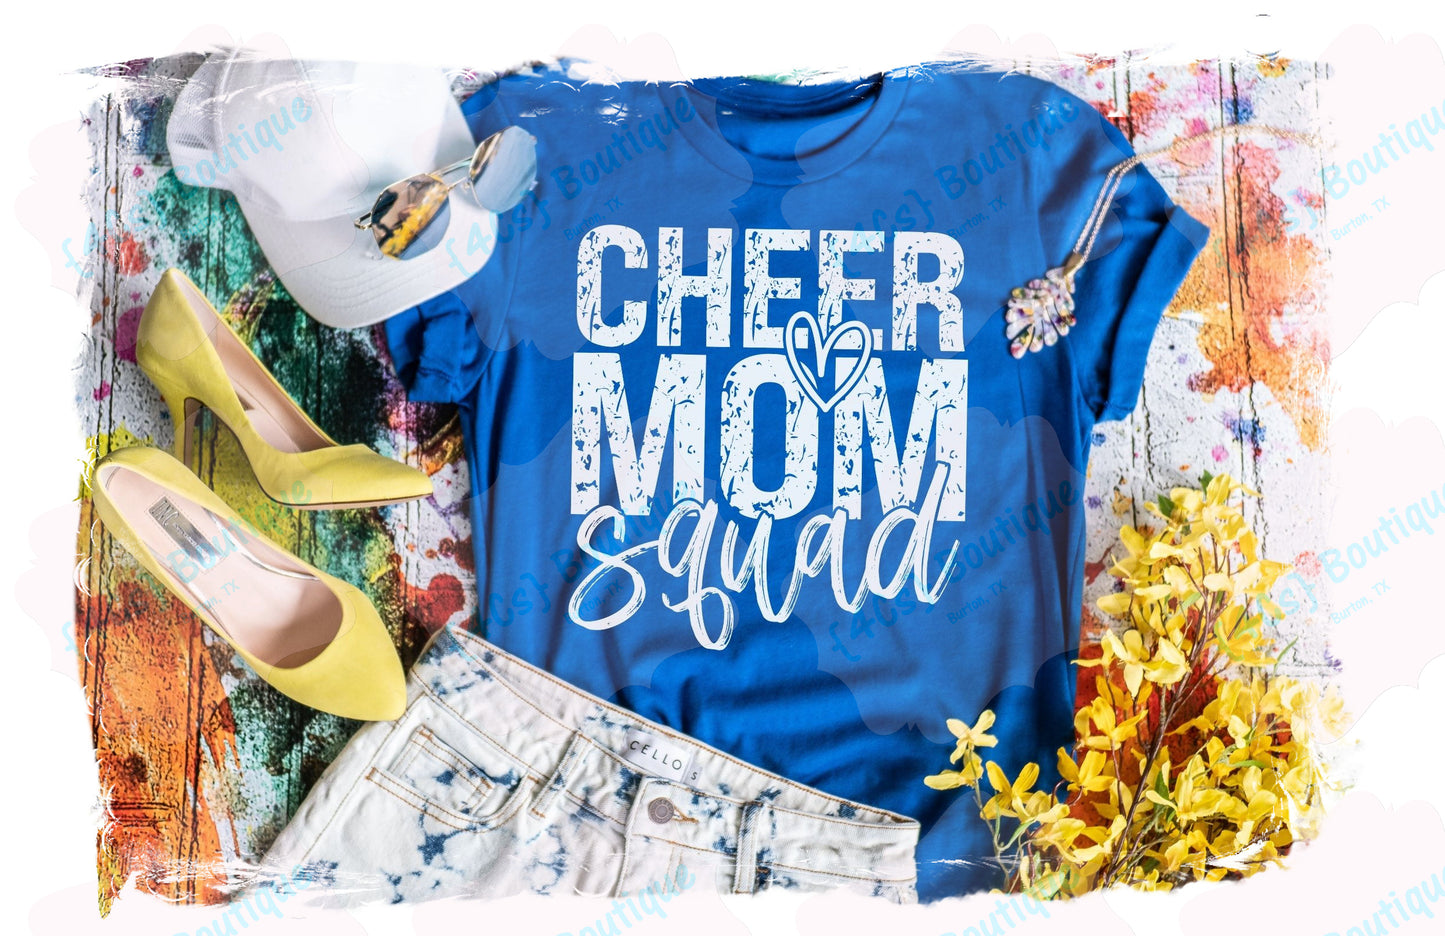 Cheer Mom Squad Shirt